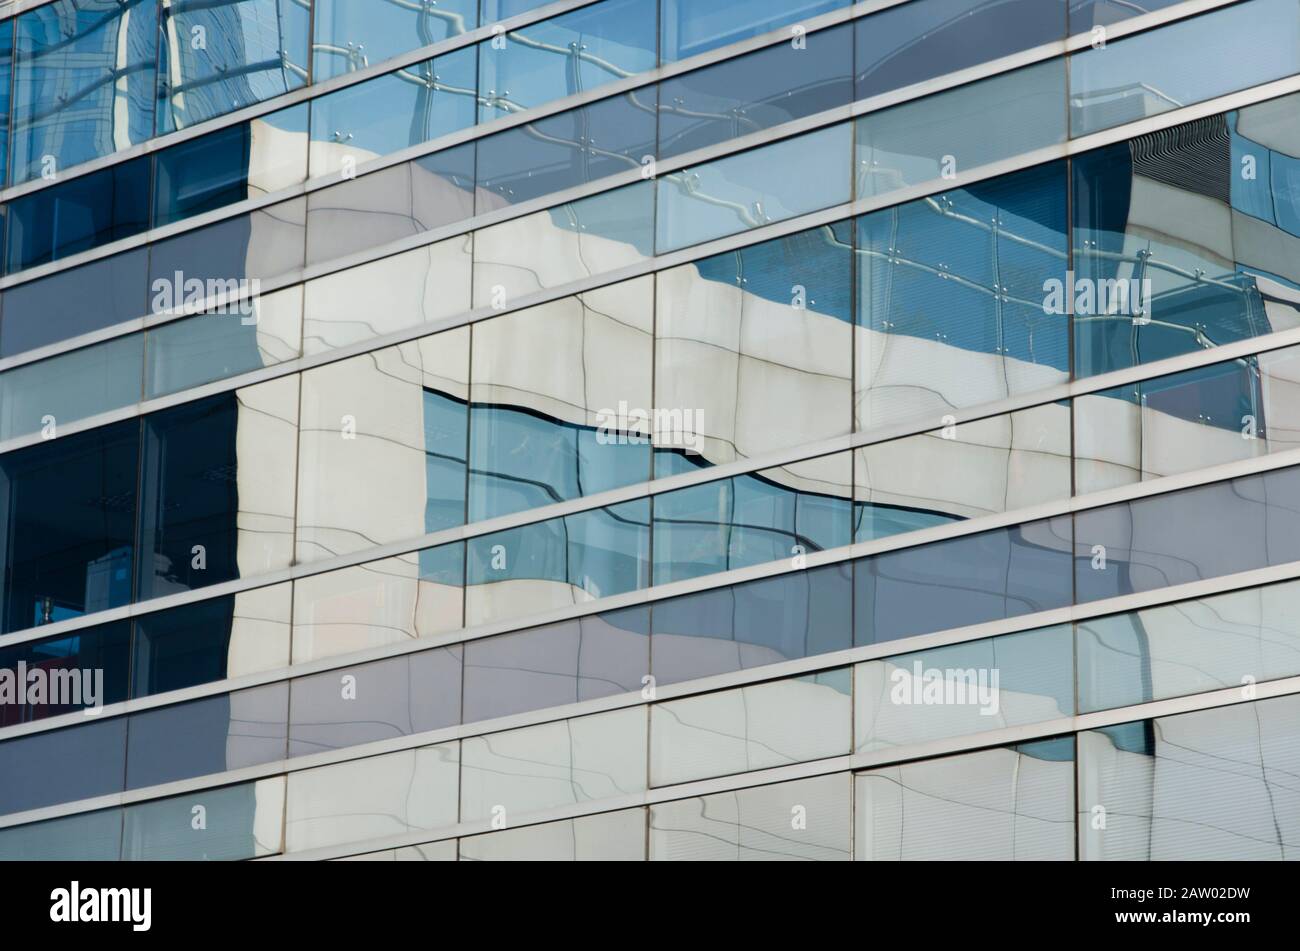 Edificio riflettente in cui si riflettono quelli circostanti. Immagine di linee parallele e perpendicolari in toni bluastri. Puerto Madero, Buenos Aire Foto Stock